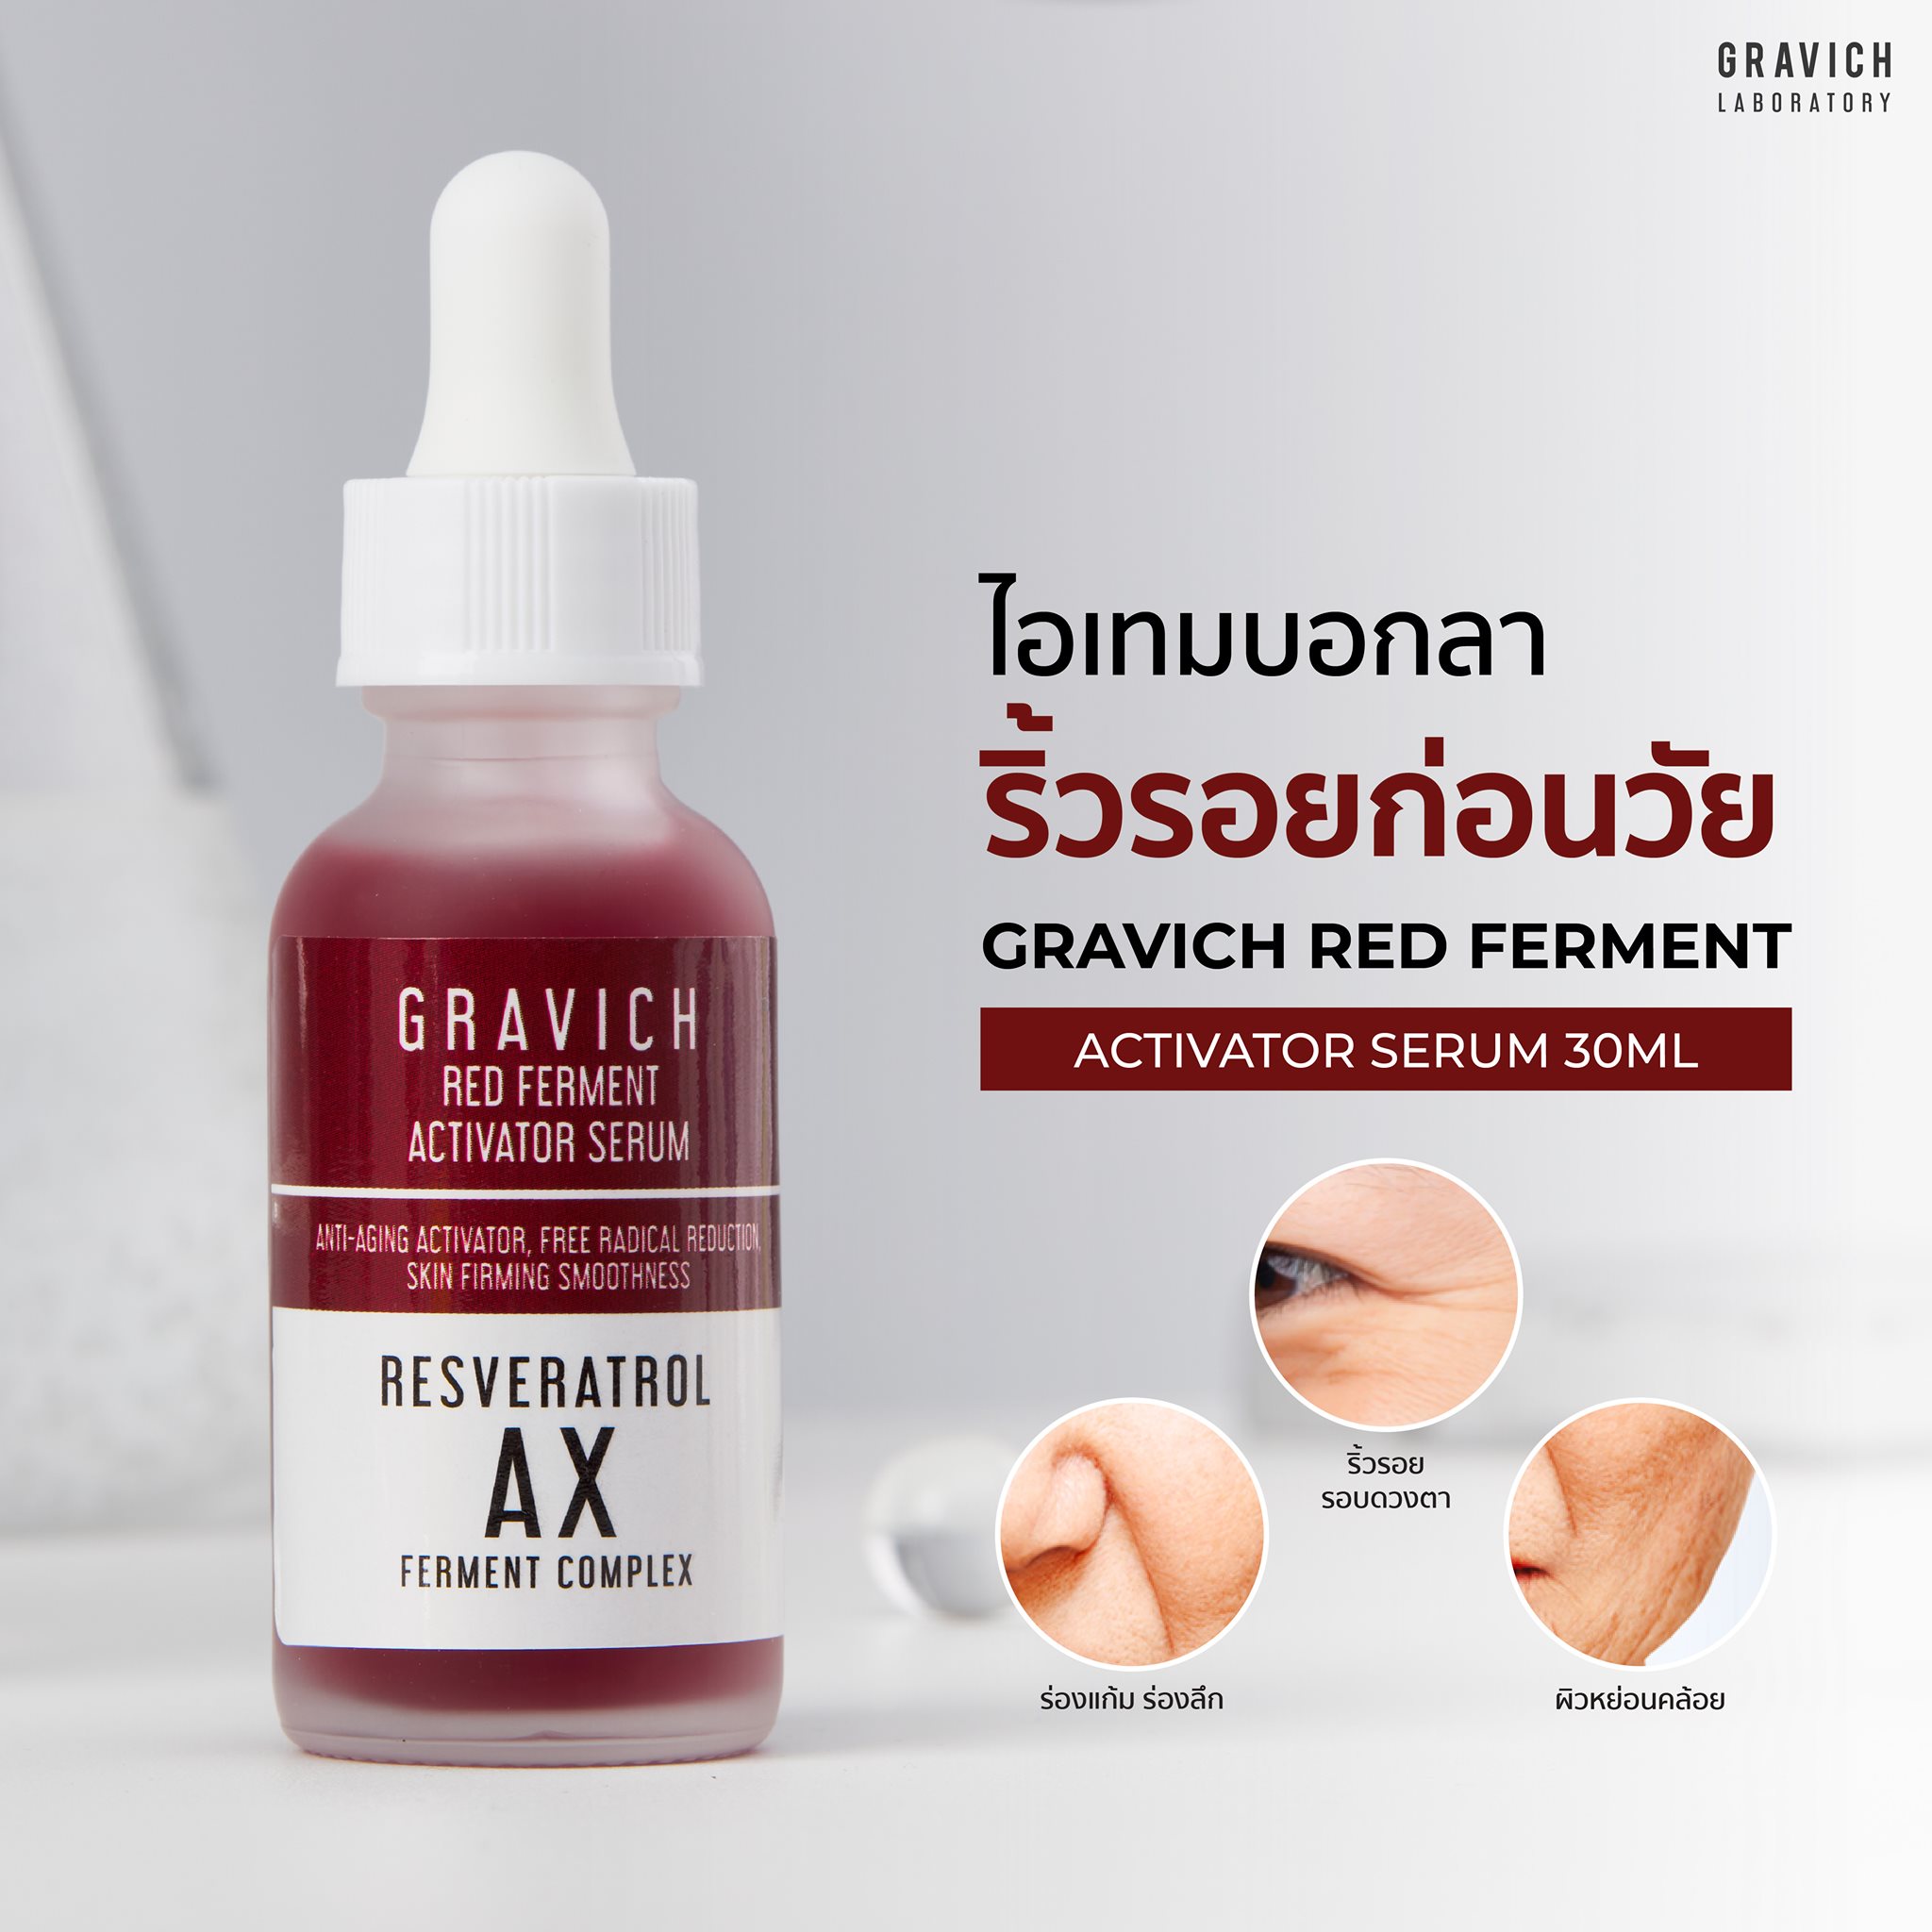 Gravich Red Ferment Activator Serum